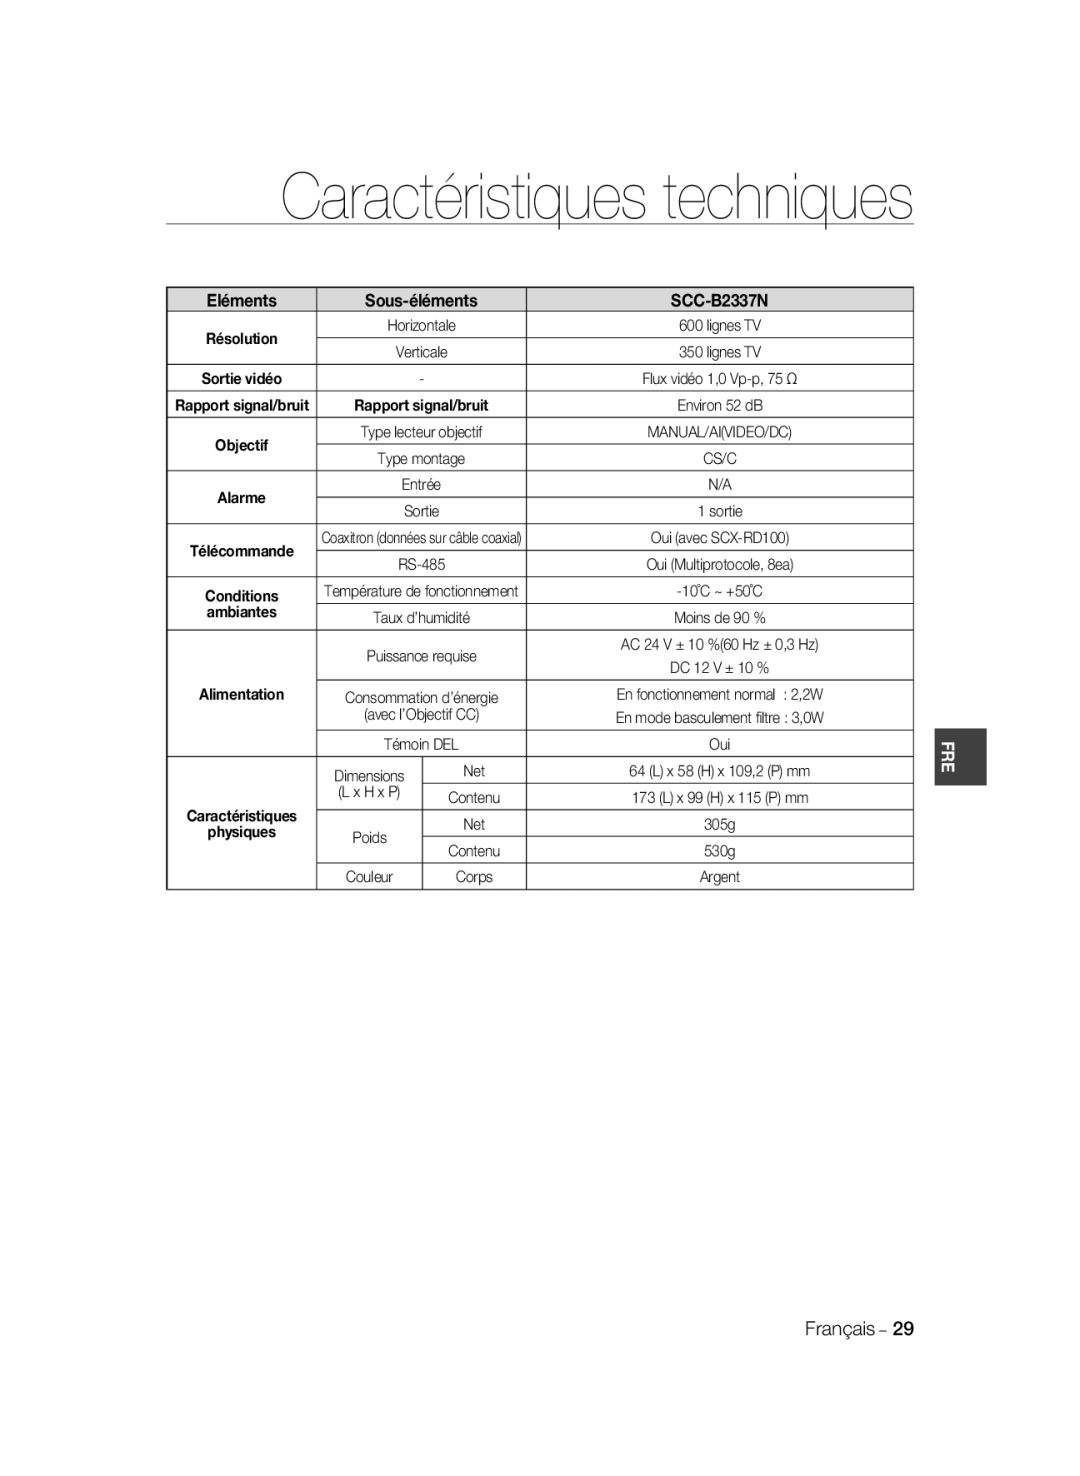 Samsung SCC-B2037P, SCC-B2337P Caractéristiques techniques, Sous-éléments, Eléments, SCC-B2337N, ambiantes, Alimentation 